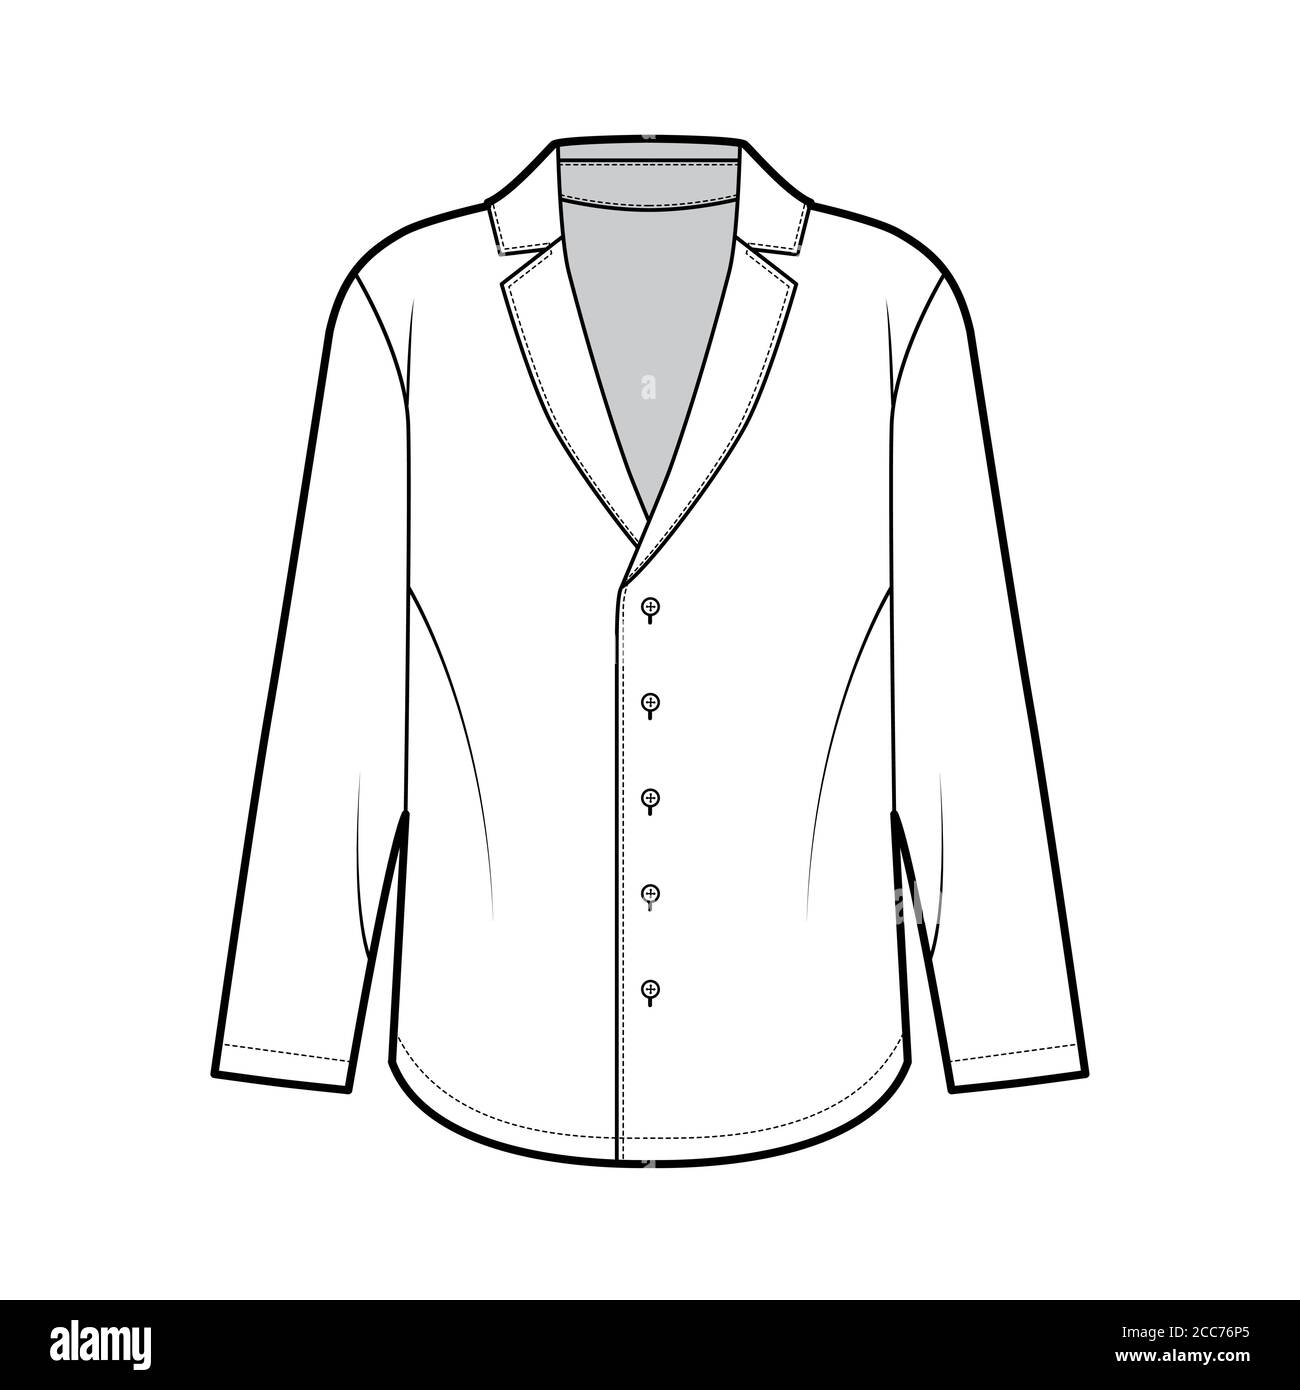 Camisa de estilo pijama ilustración técnica de moda con silueta suelta, cuello de muesca en delanteros, mangas largas. Plantilla de indumentaria plana color blanco. Mujeres hombres unisex top Imagen